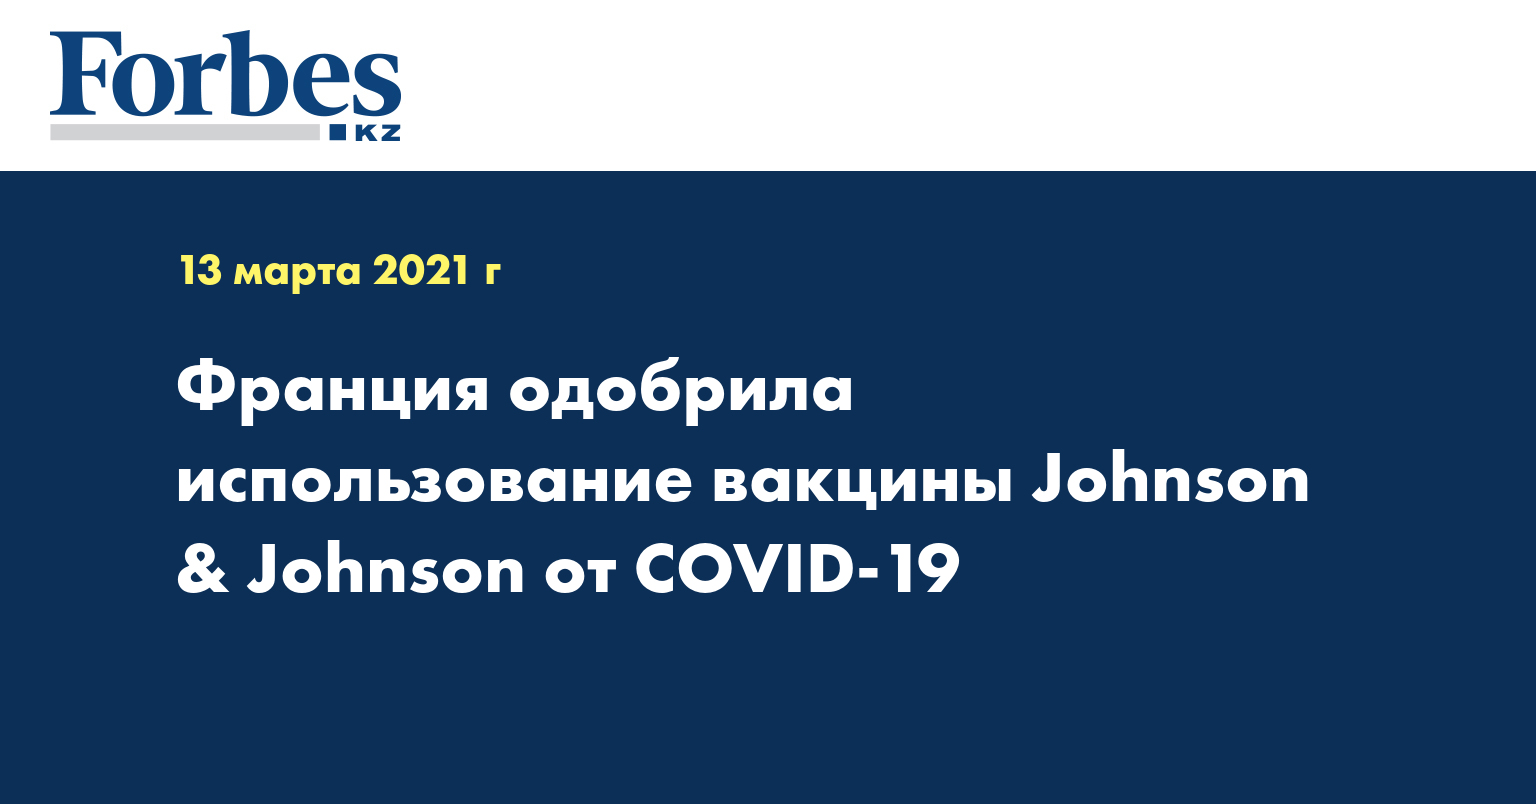 Франция одобрила использование вакцины Johnson & Johnson от COVID-19